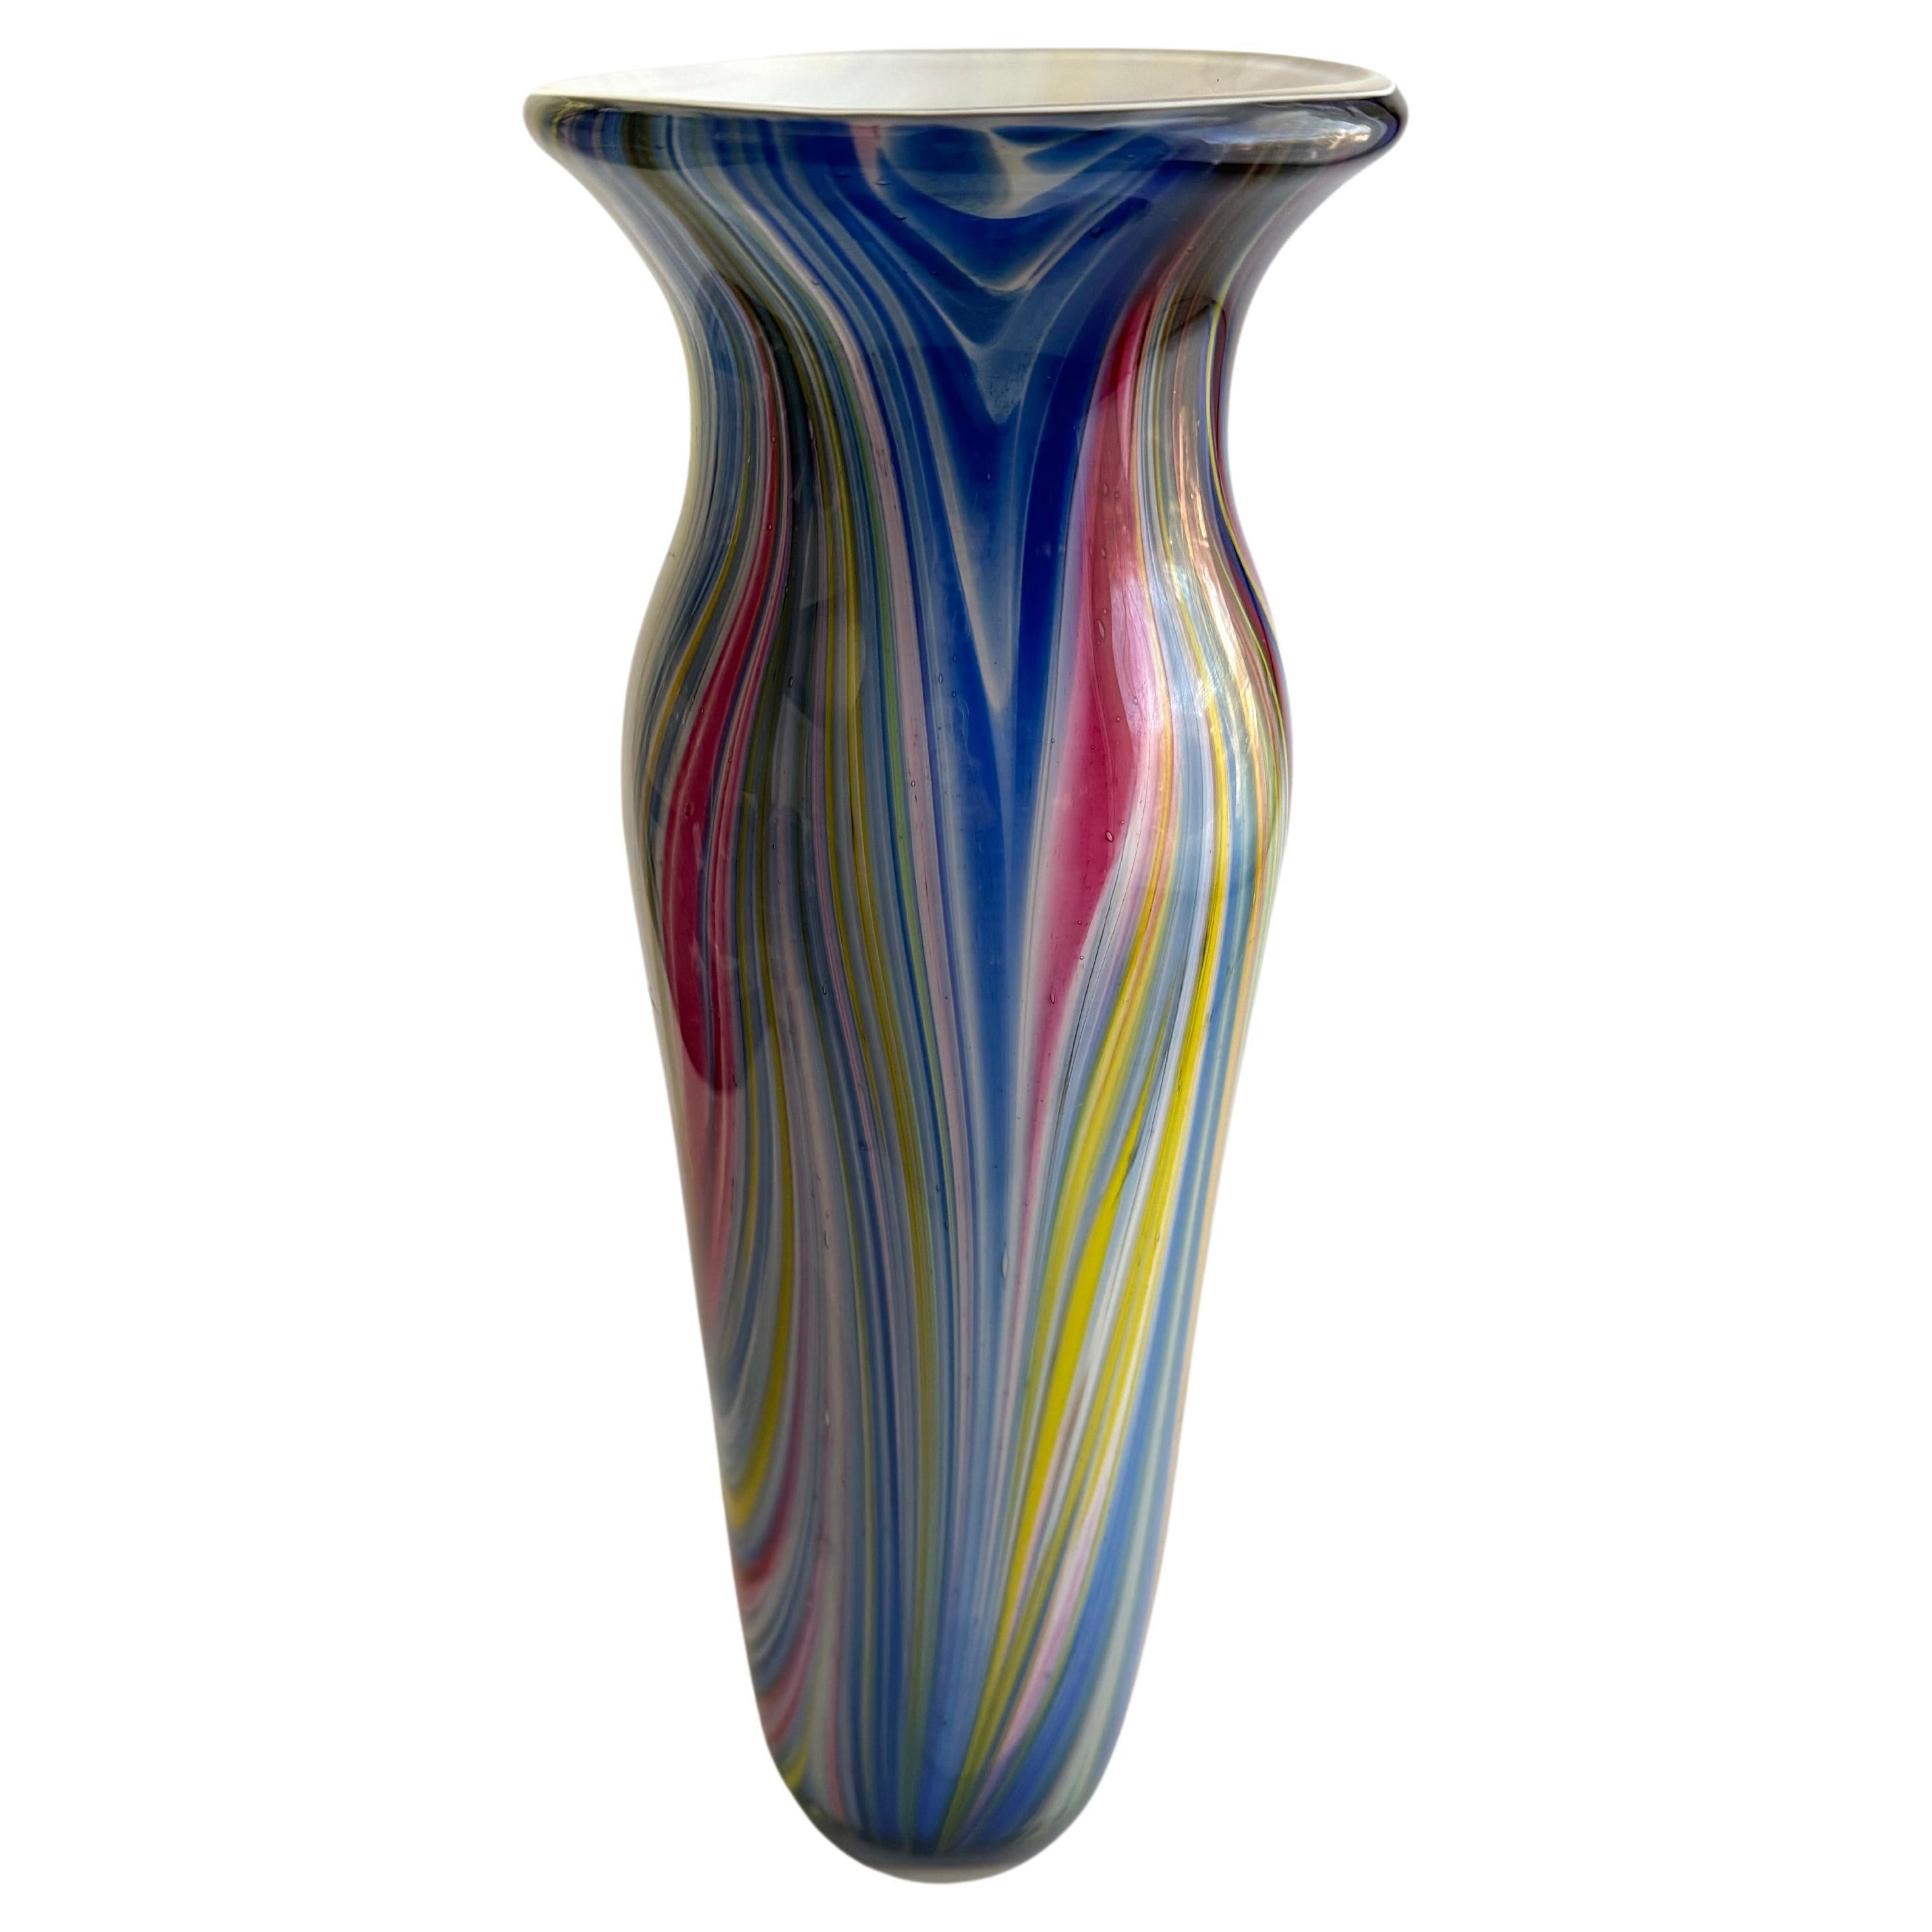 Il s'agit d'un magnifique vase en verre d'art dont le style rappelle celui de la verrerie de Murano. Le verre de Murano est connu pour son artisanat exquis et ses motifs multicolores et vibrants, souvent caractérisés par des tourbillons et des